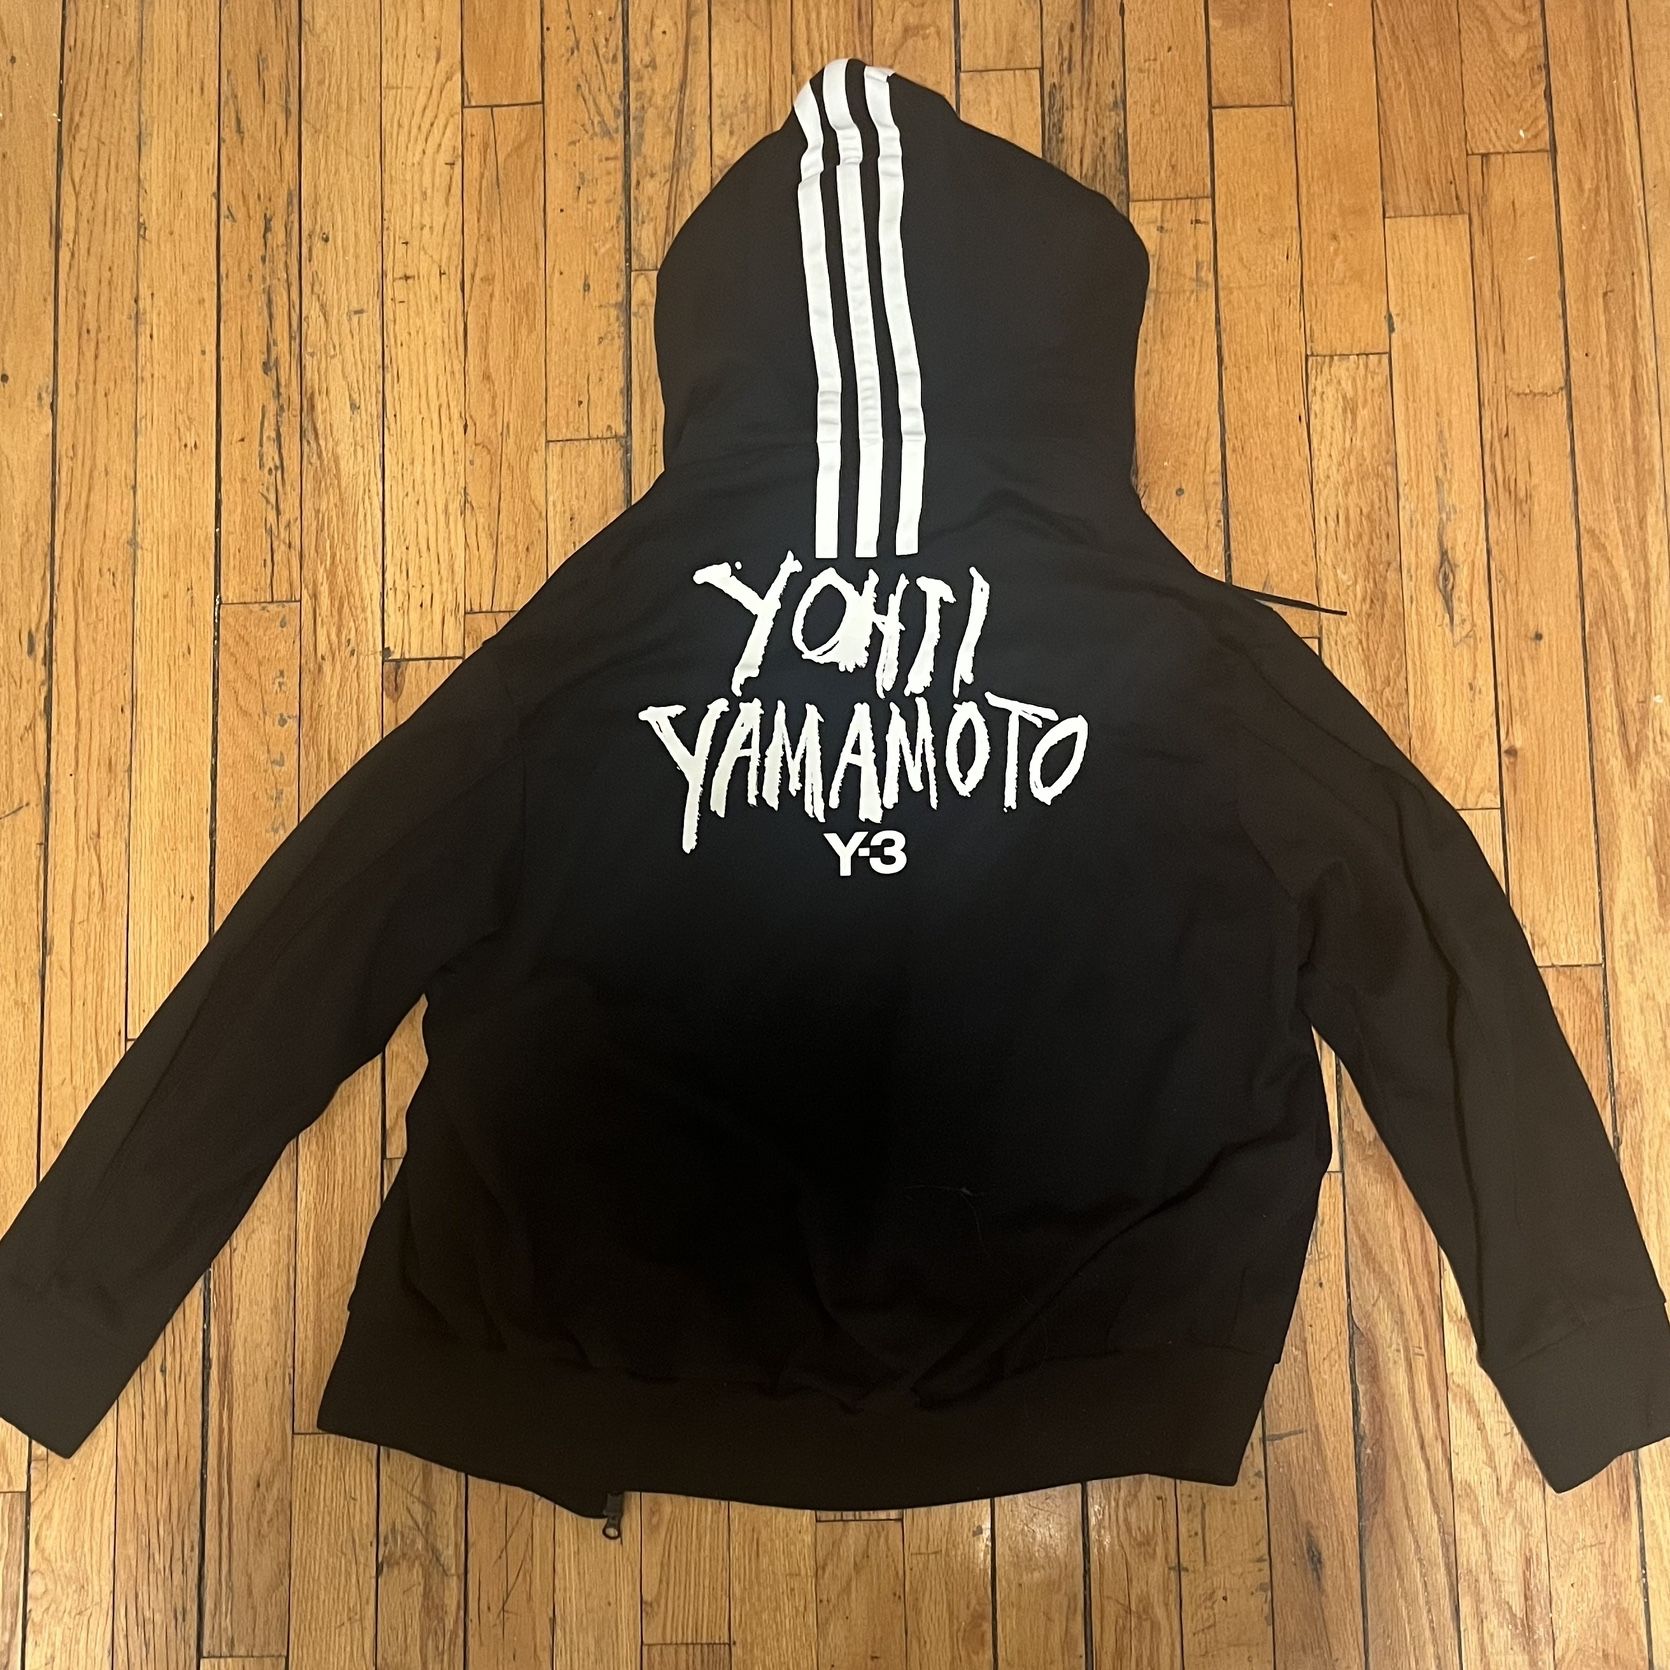 Yamamoto Y3 Jacket Size M